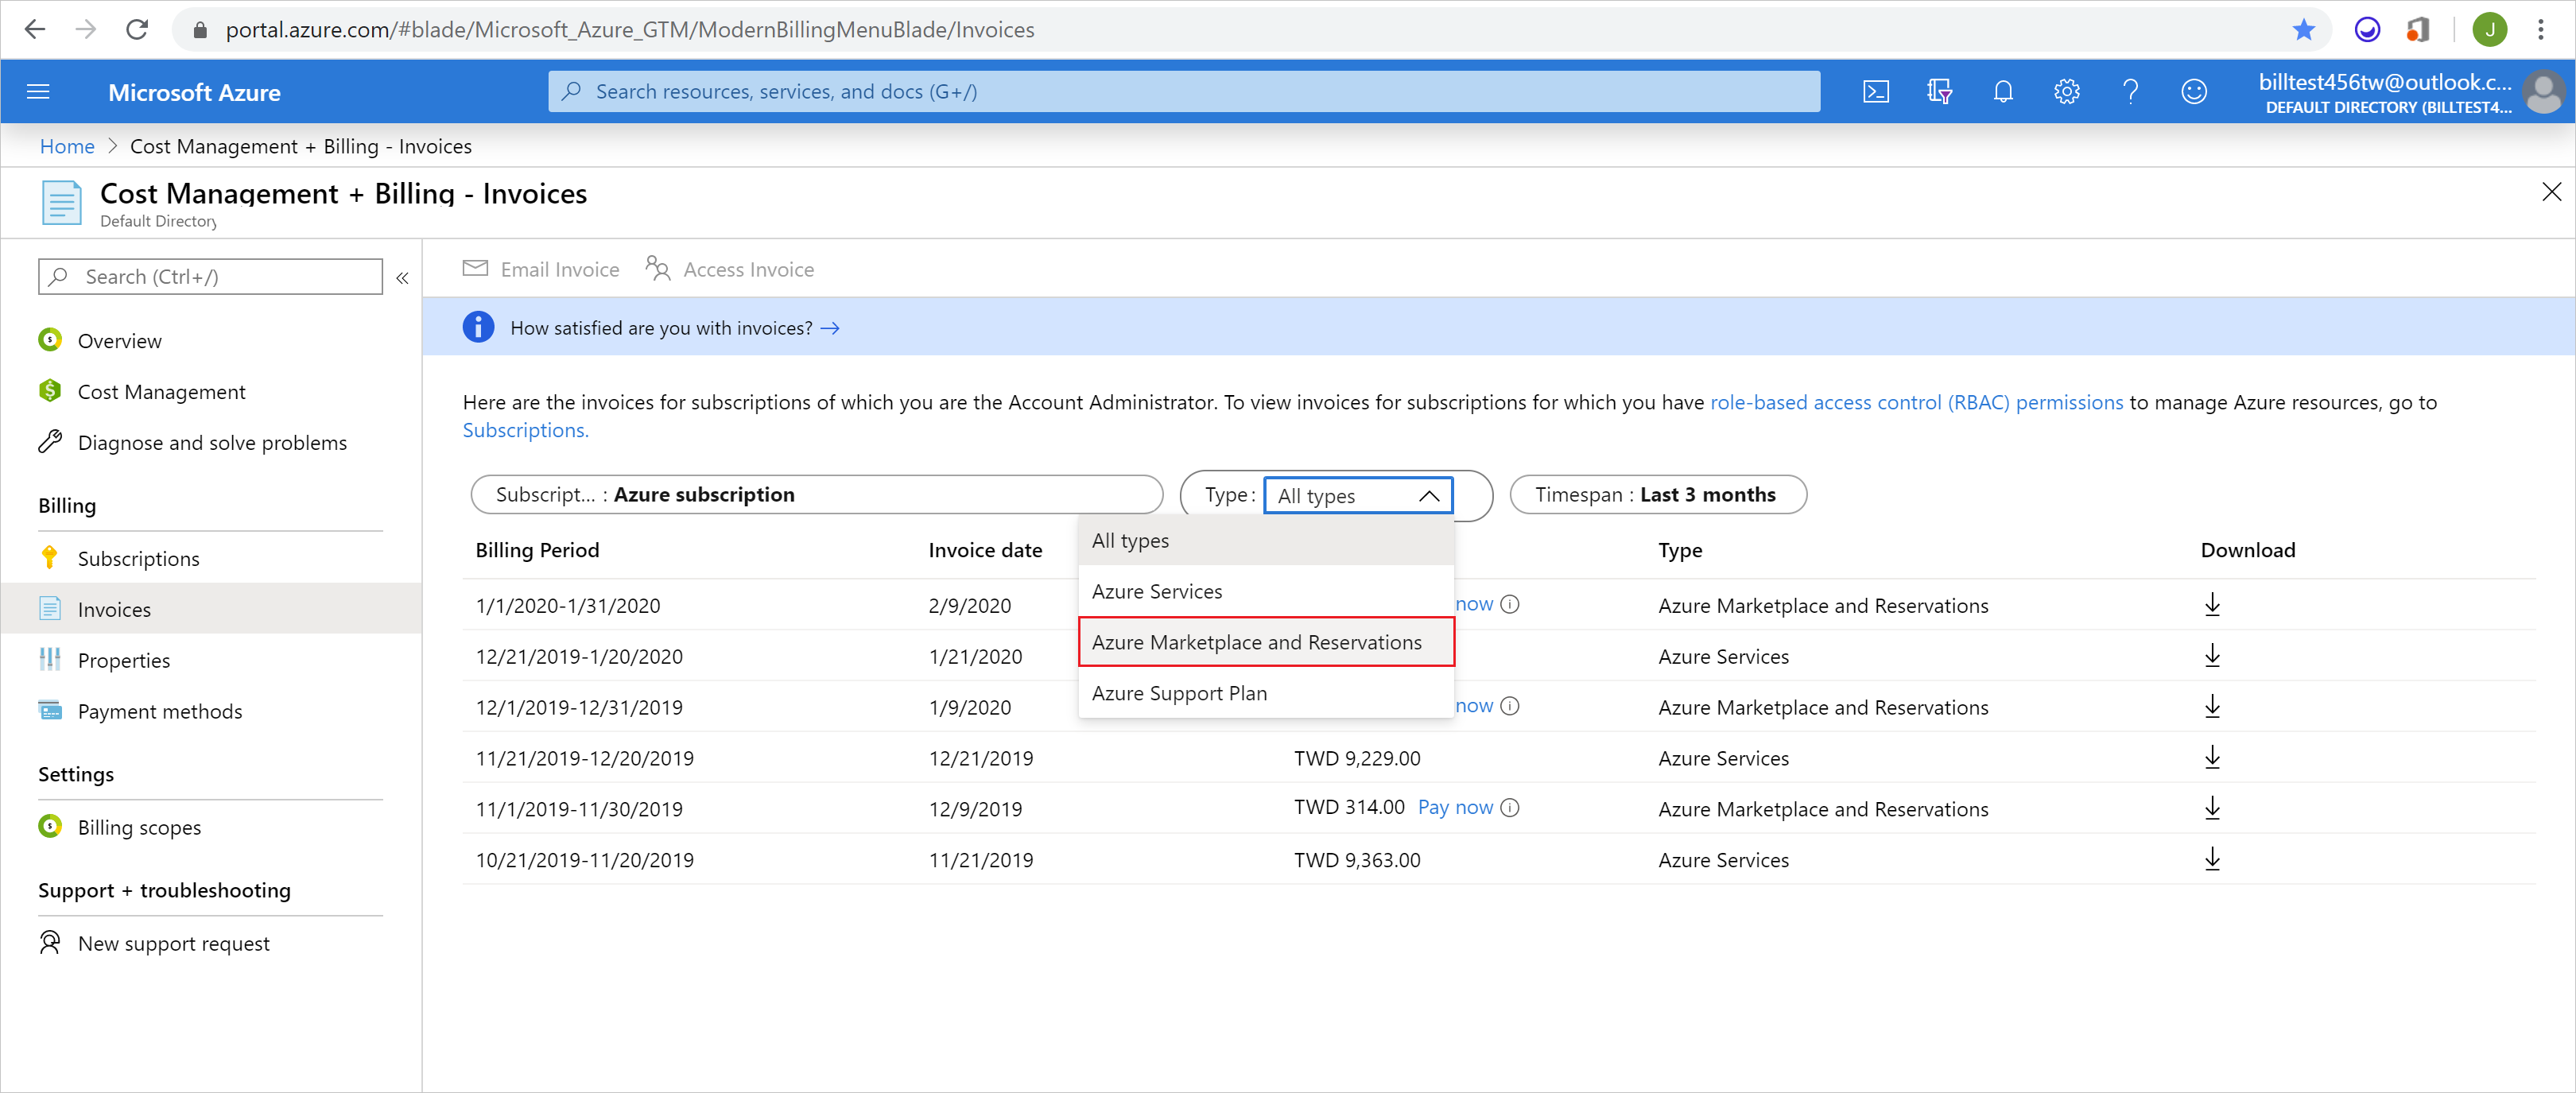 Captura de pantalla que muestra Azure Marketplace y Reserva seleccionada en la lista desplegable.